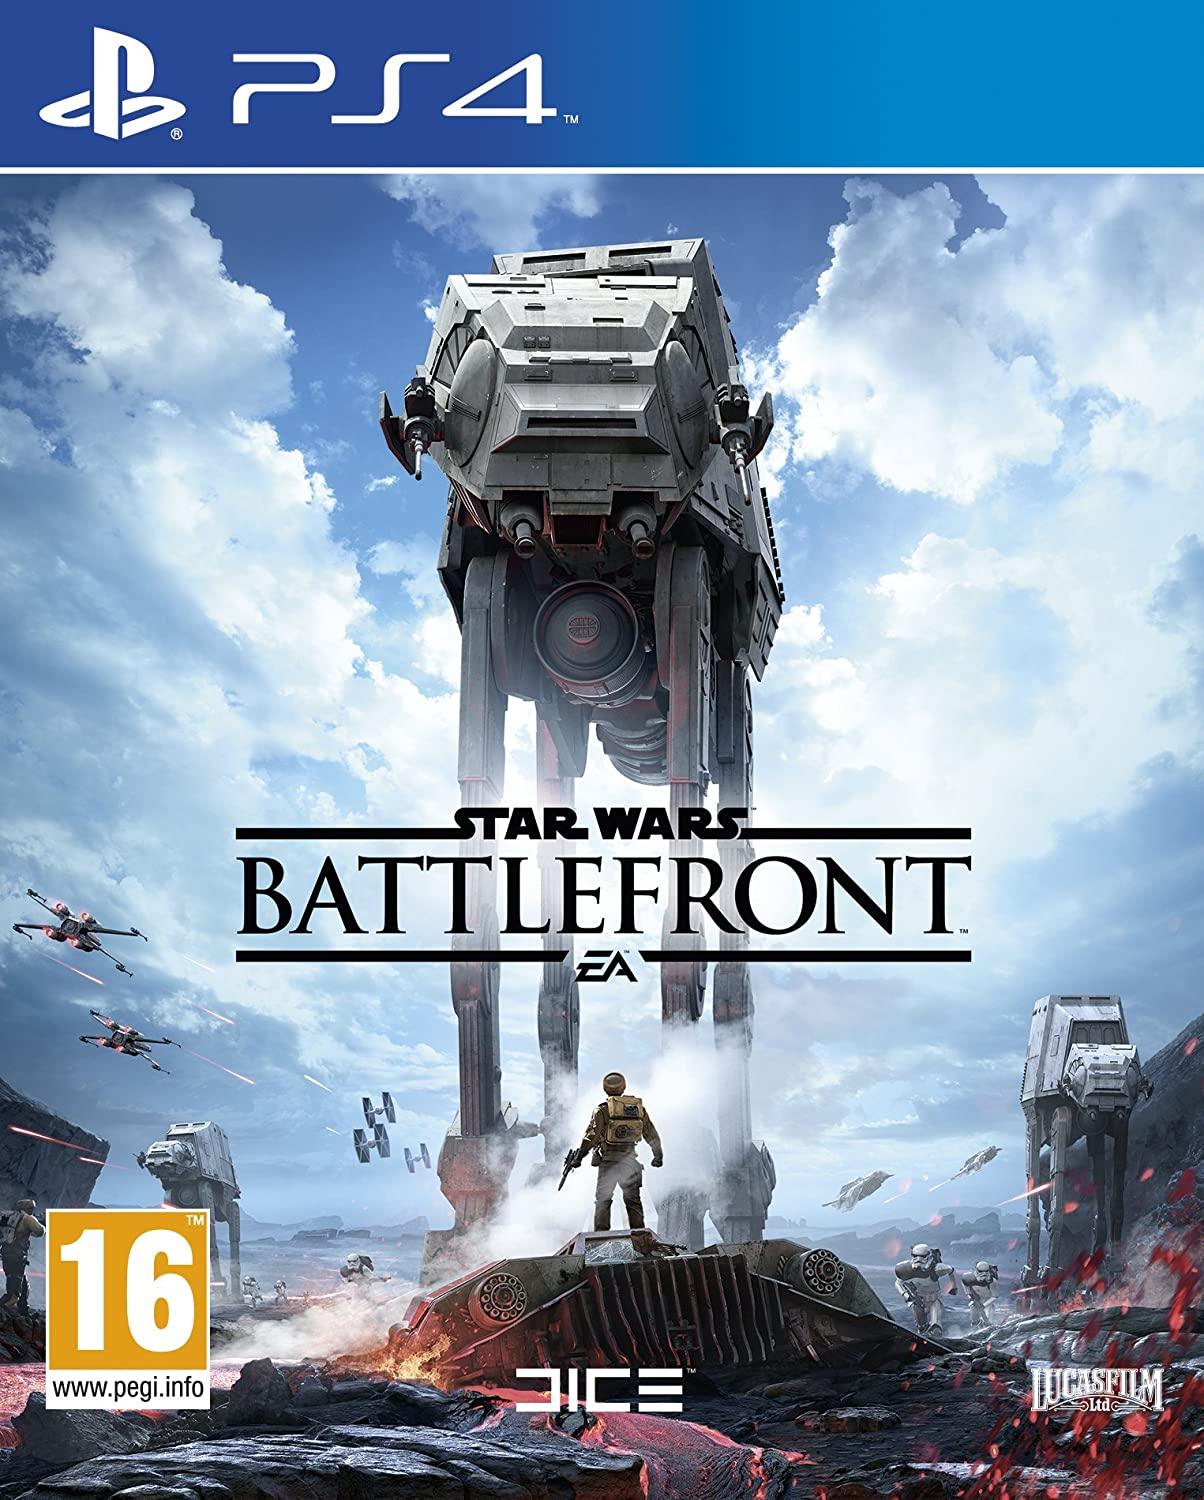 Star Wars Battlefront (PS4) - GameStore.mt | Powered by Flutisat